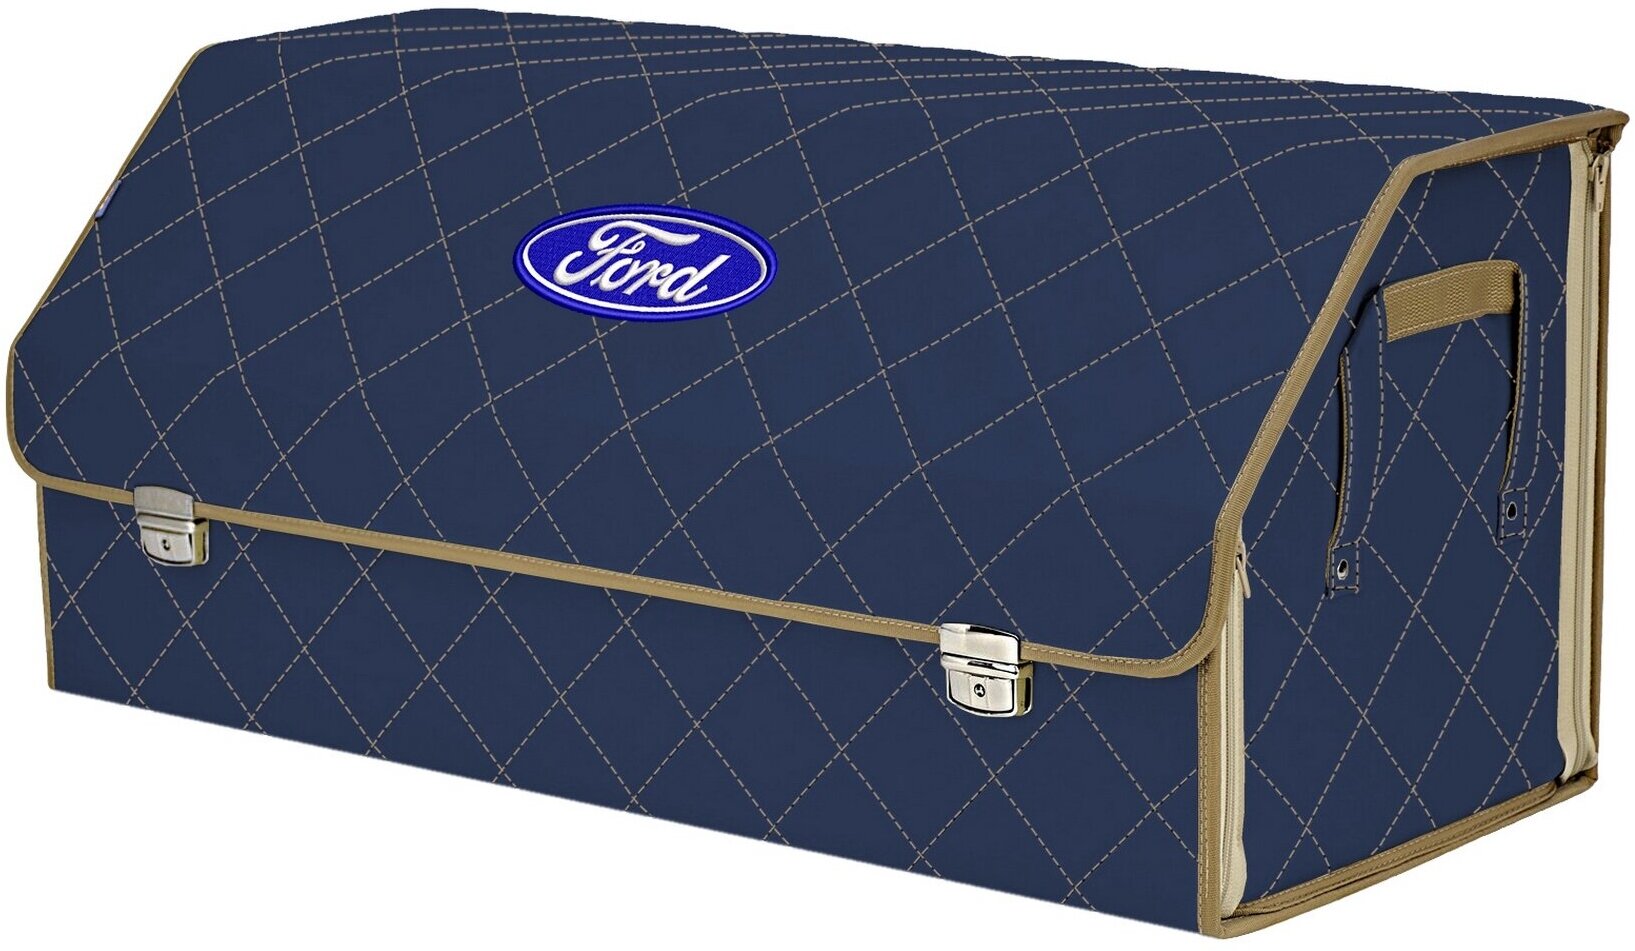 Органайзер-саквояж в багажник "Союз Премиум" (размер XXL). Цвет: синий с бежевой прострочкой Ромб и вышивкой Ford (Форд).